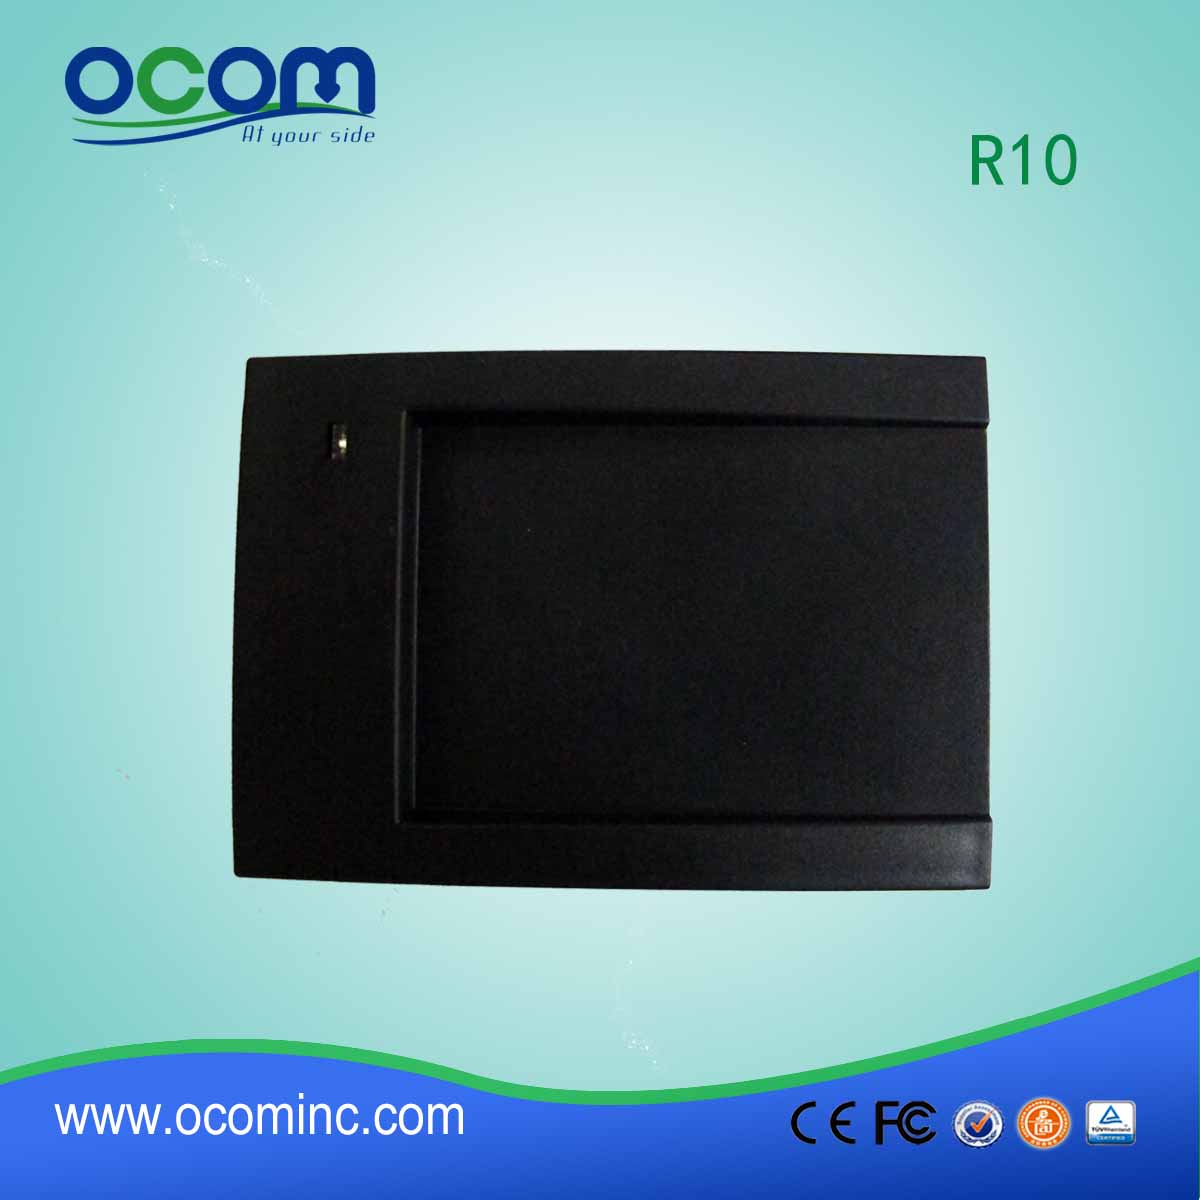 Αναγνώστης καρτών RFID R10